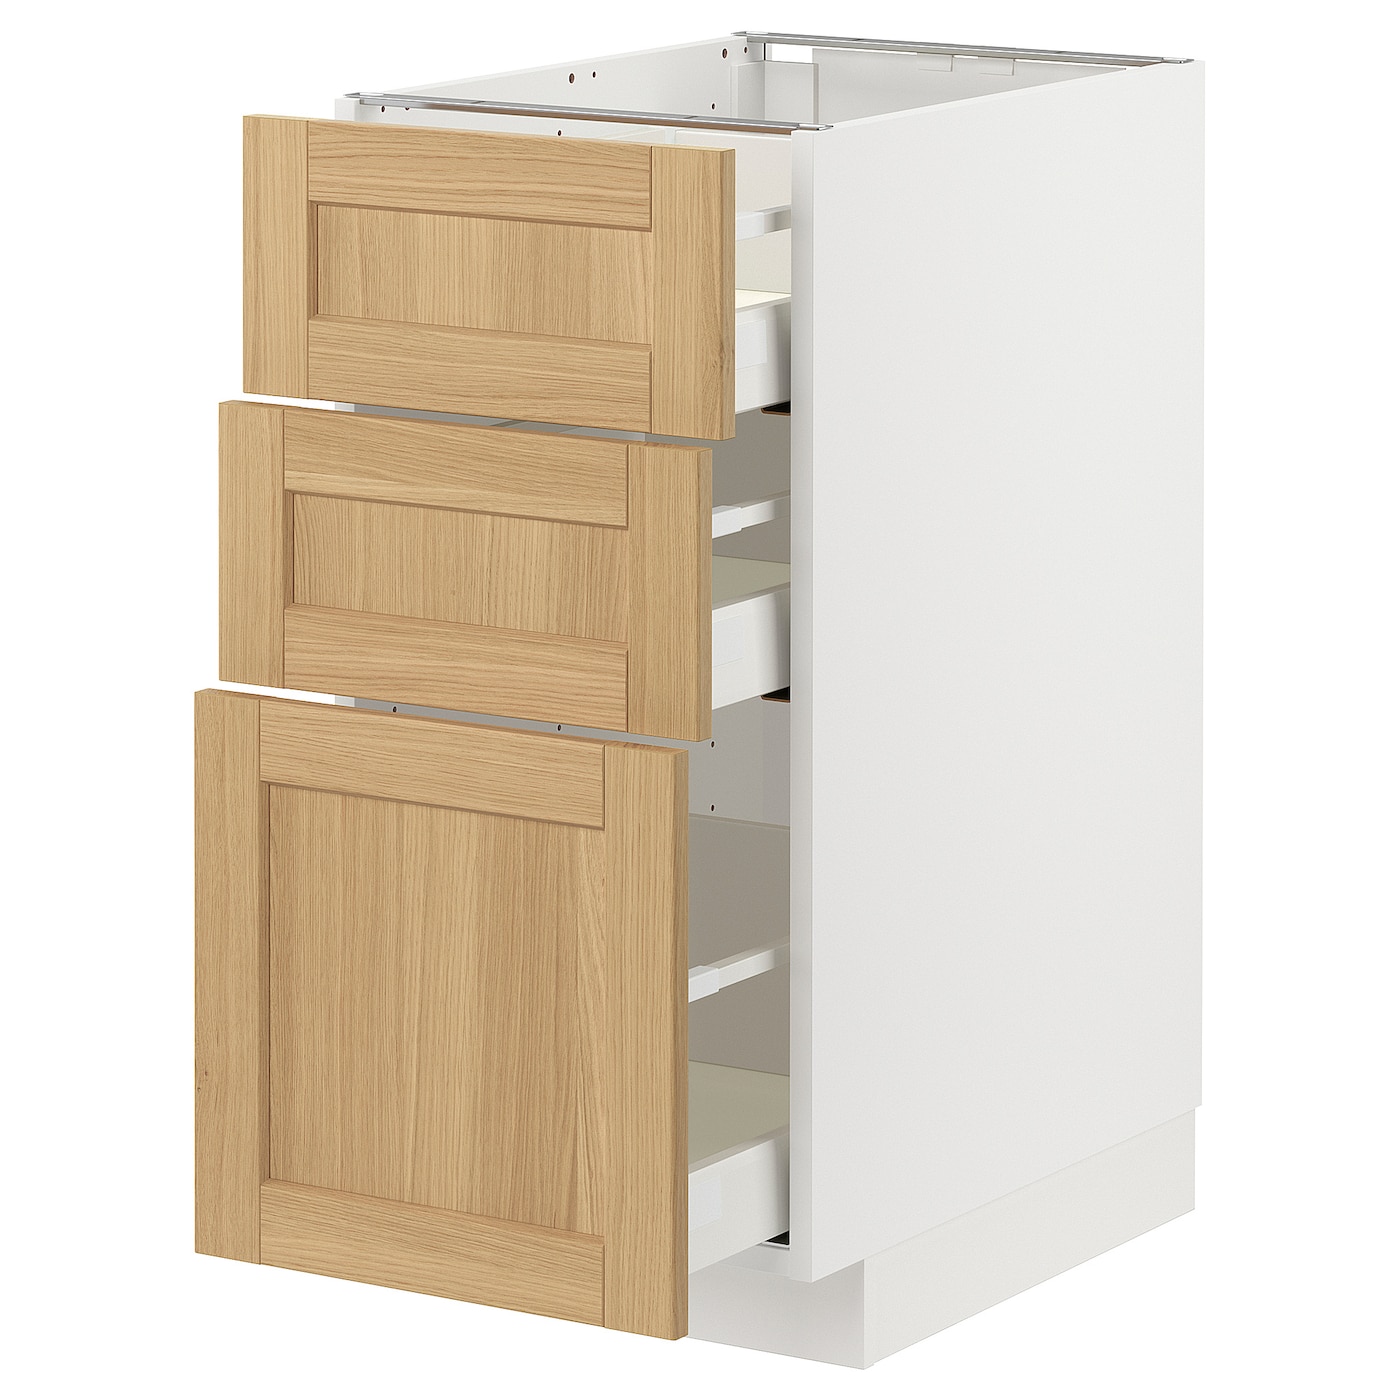 Напольный шкаф - METOD / MAXIMERA IKEA/ МЕТОД/ МАКСИМЕРА ИКЕА,  40х60 см, белый/под беленый дуб